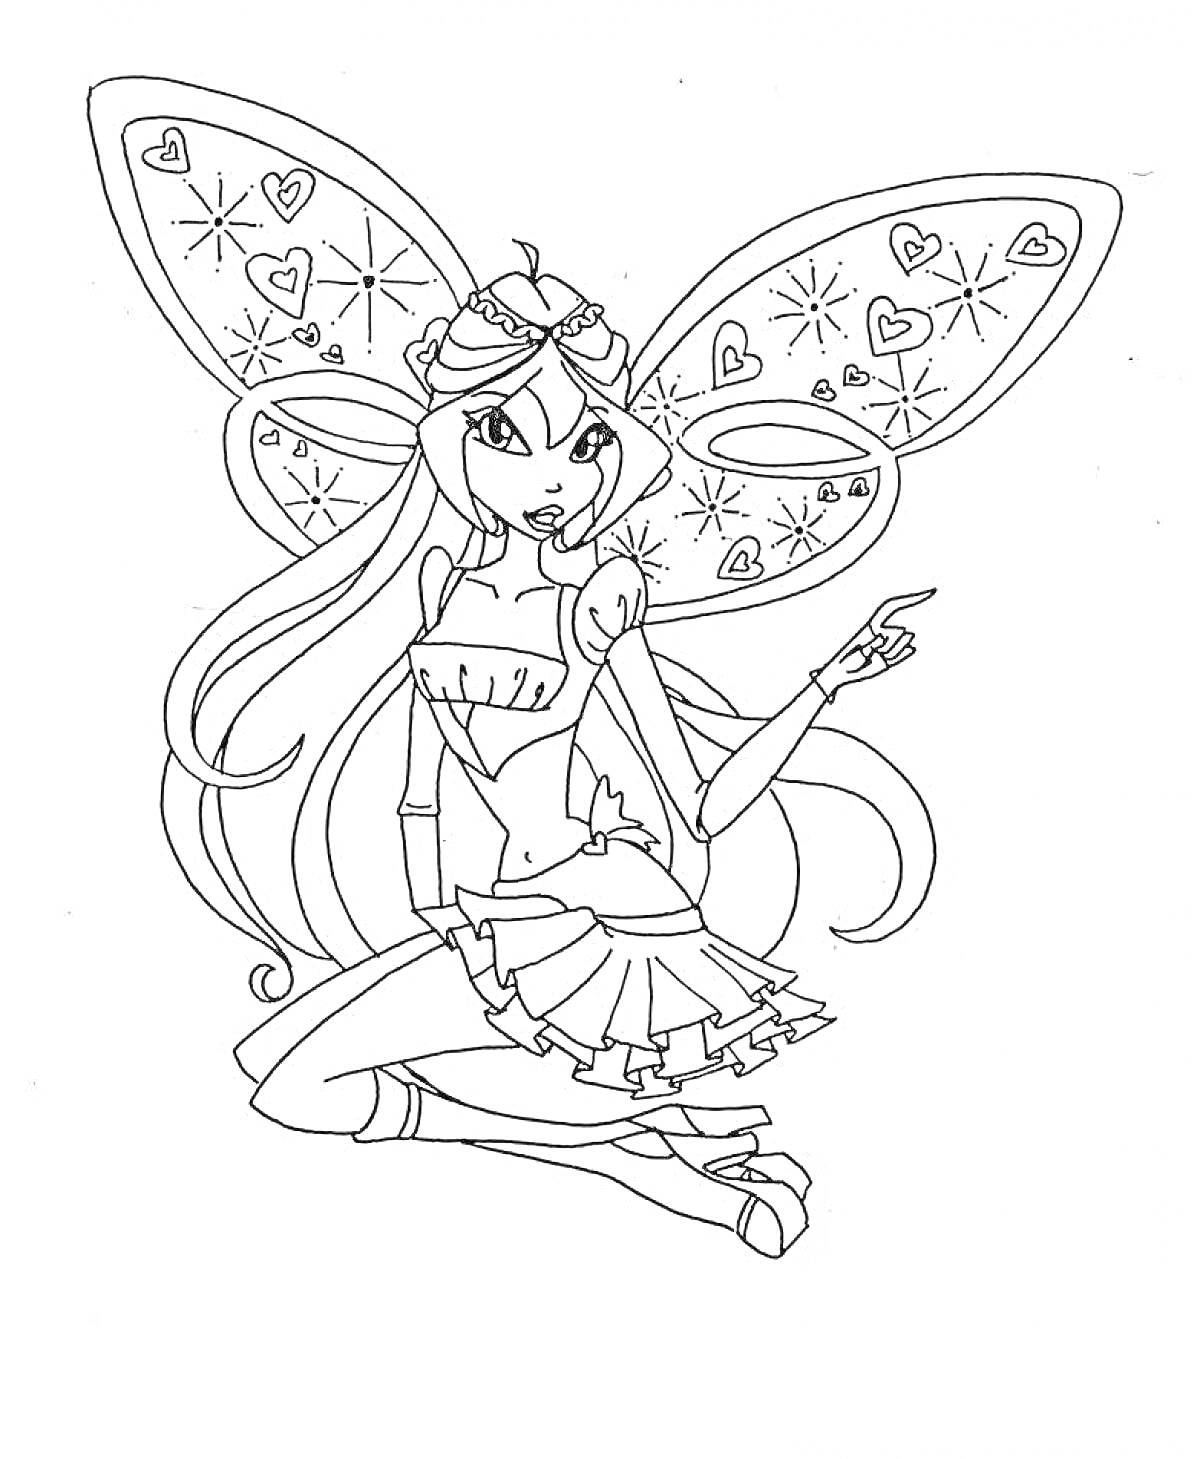 Раскраска Фея с длинными волосами, скрещенными ножками, выдающимися крыльями с сердечками и звёздочками, указующим пальцем